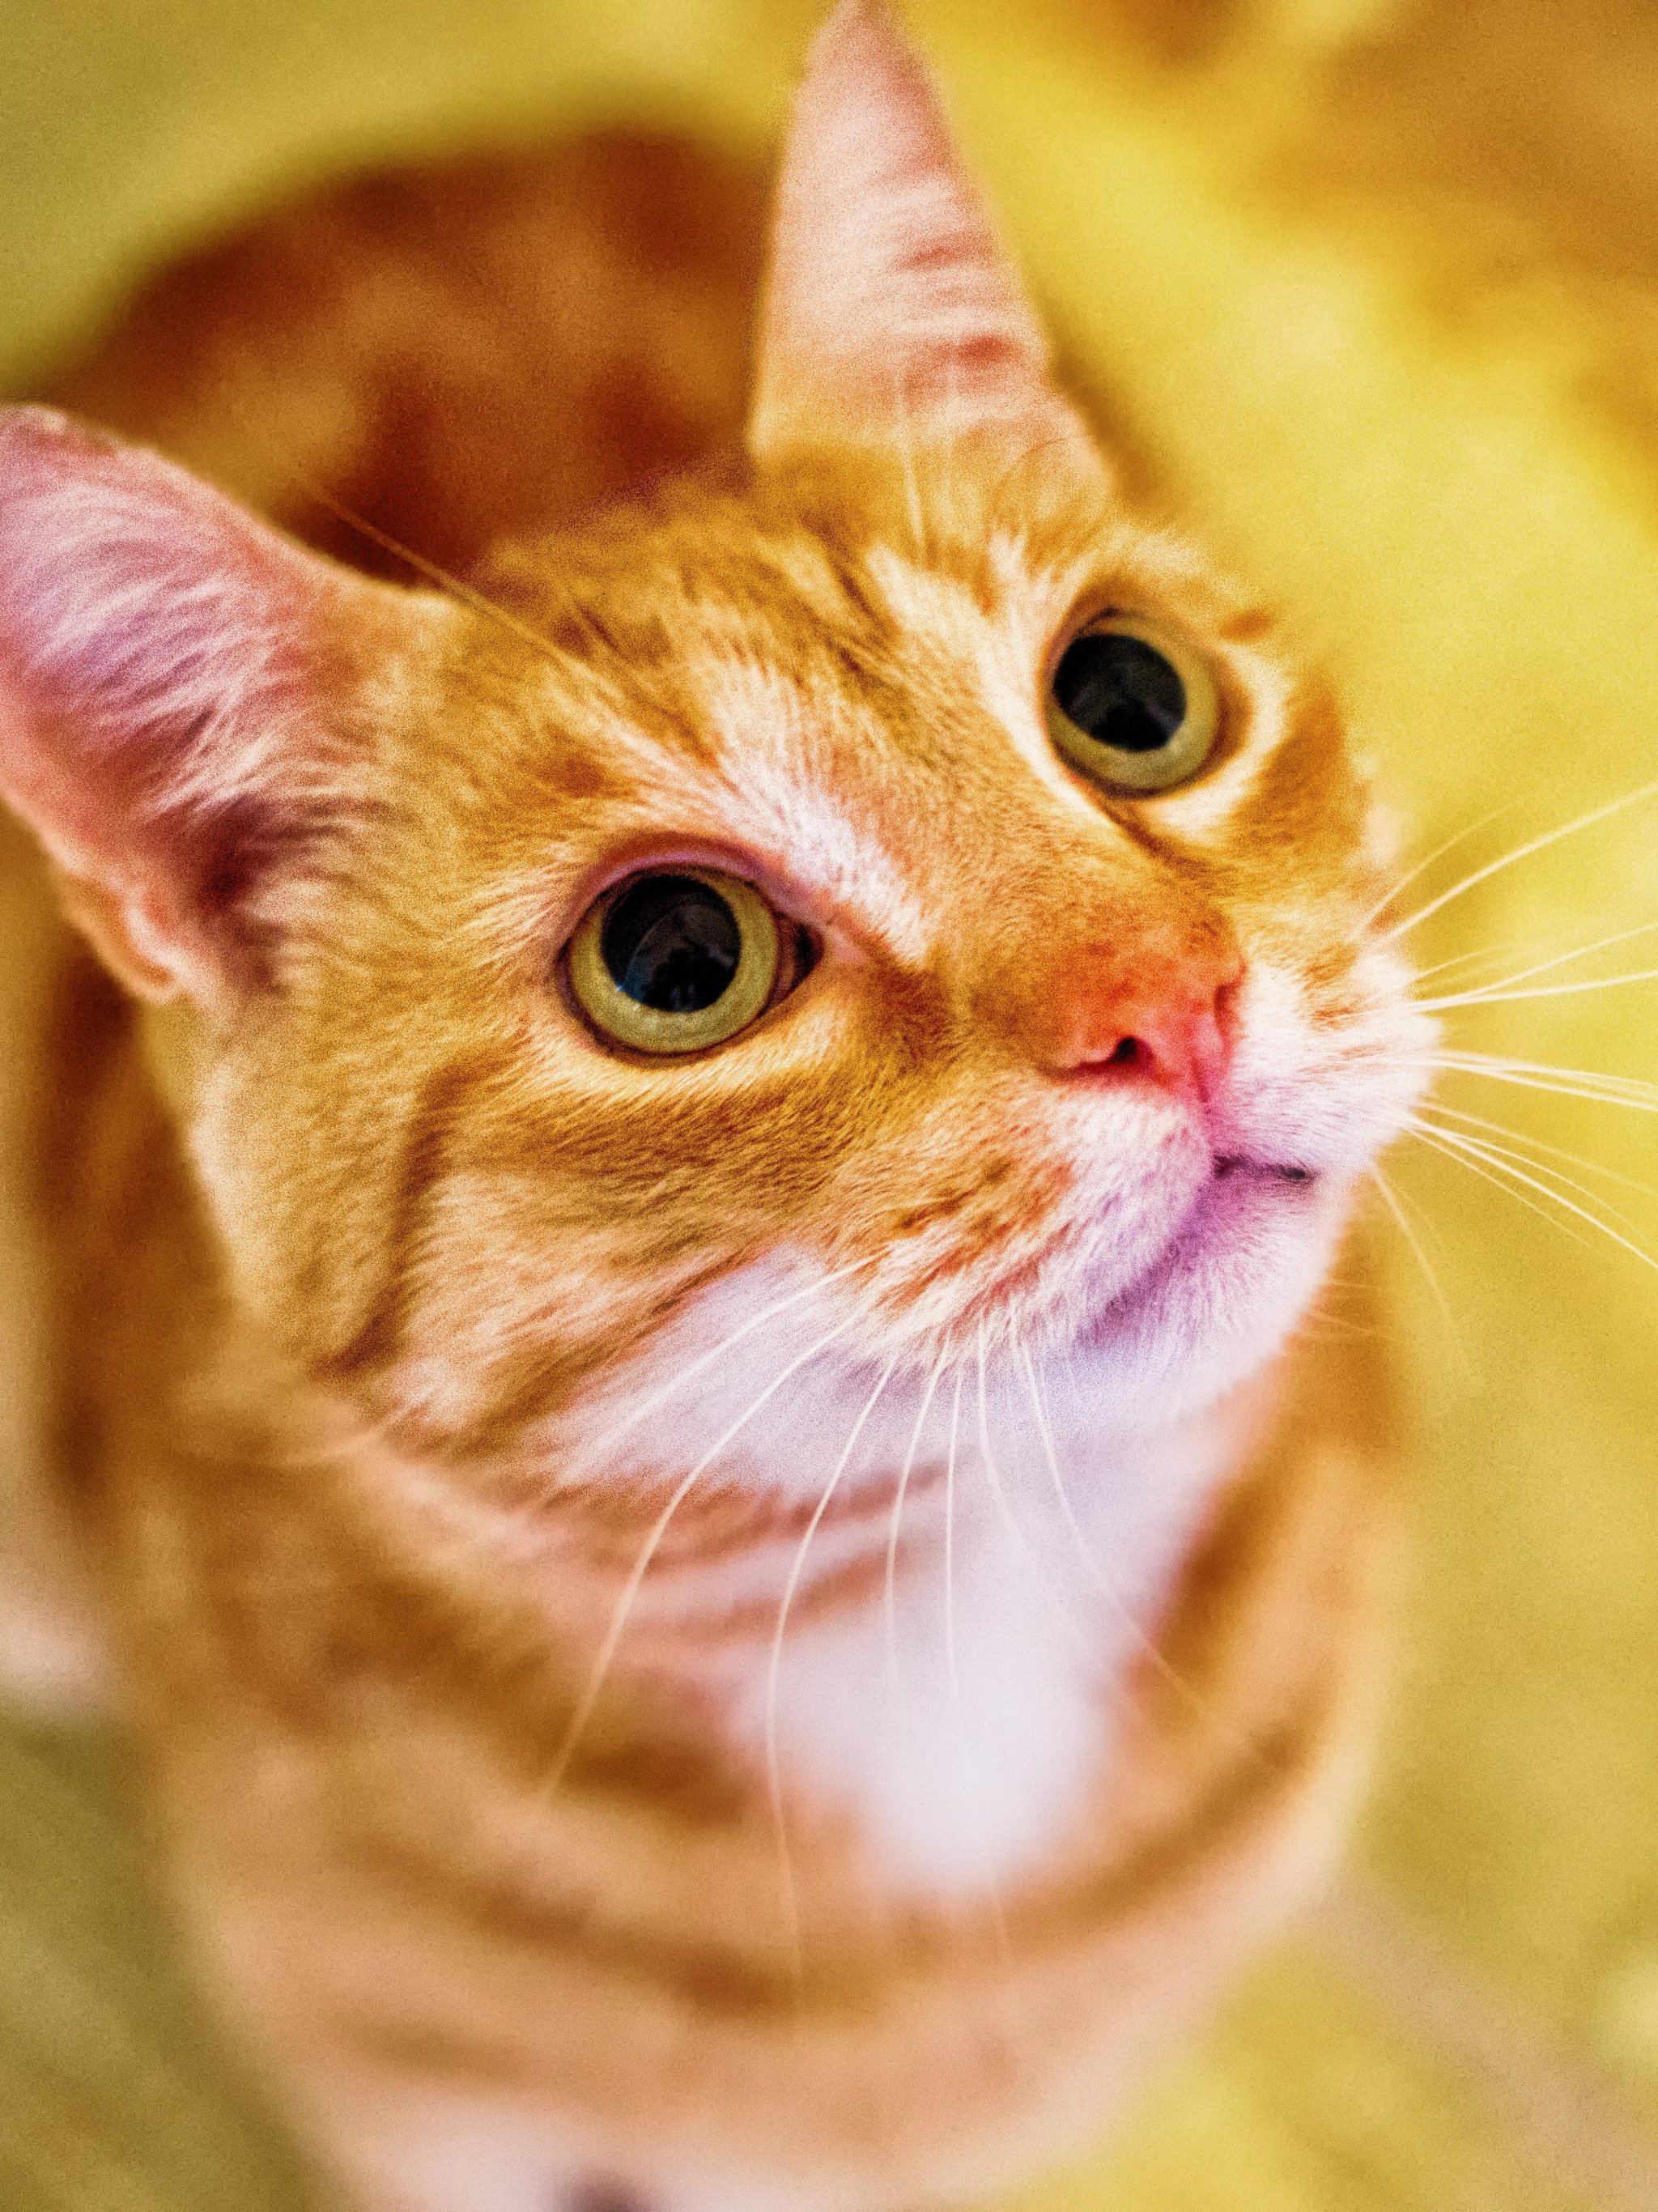 Orange Cat Looking Up Wallpaper iPhone, Android & Desktop Backgrounds